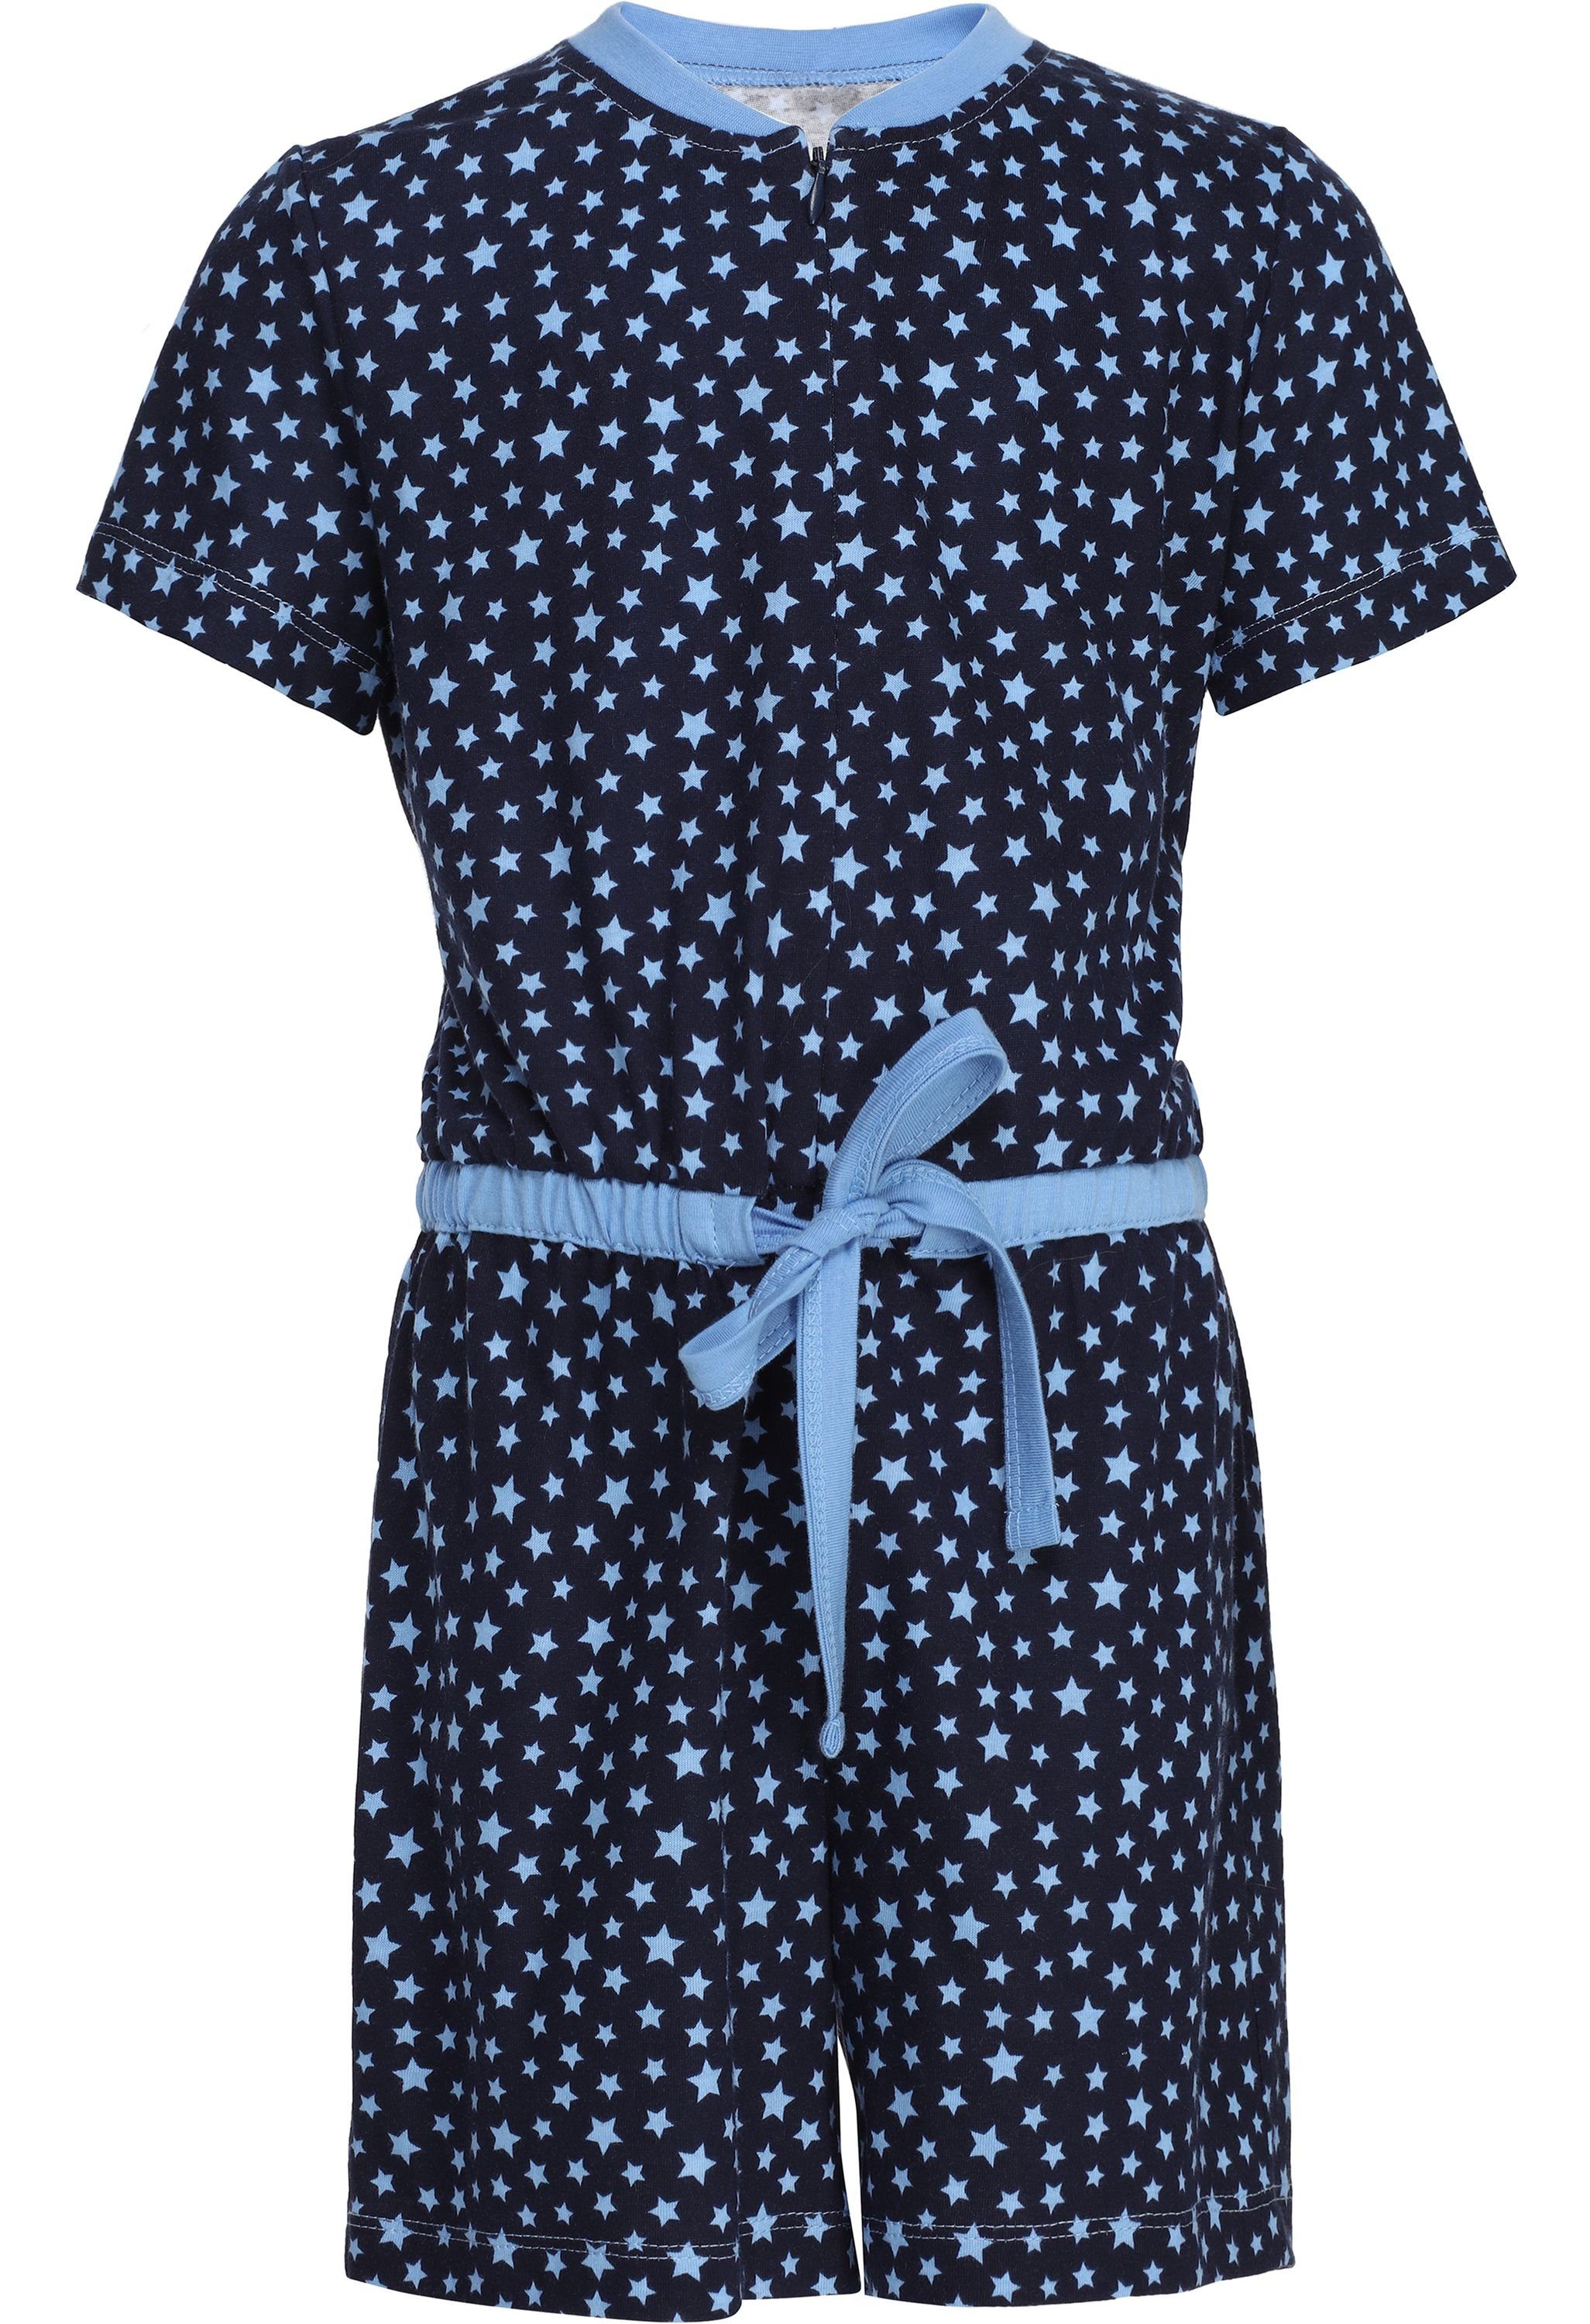 Marineblau/Sterne Schlafanzug Overall Schlafanzug MS10-267 Style Mädchen Merry Short